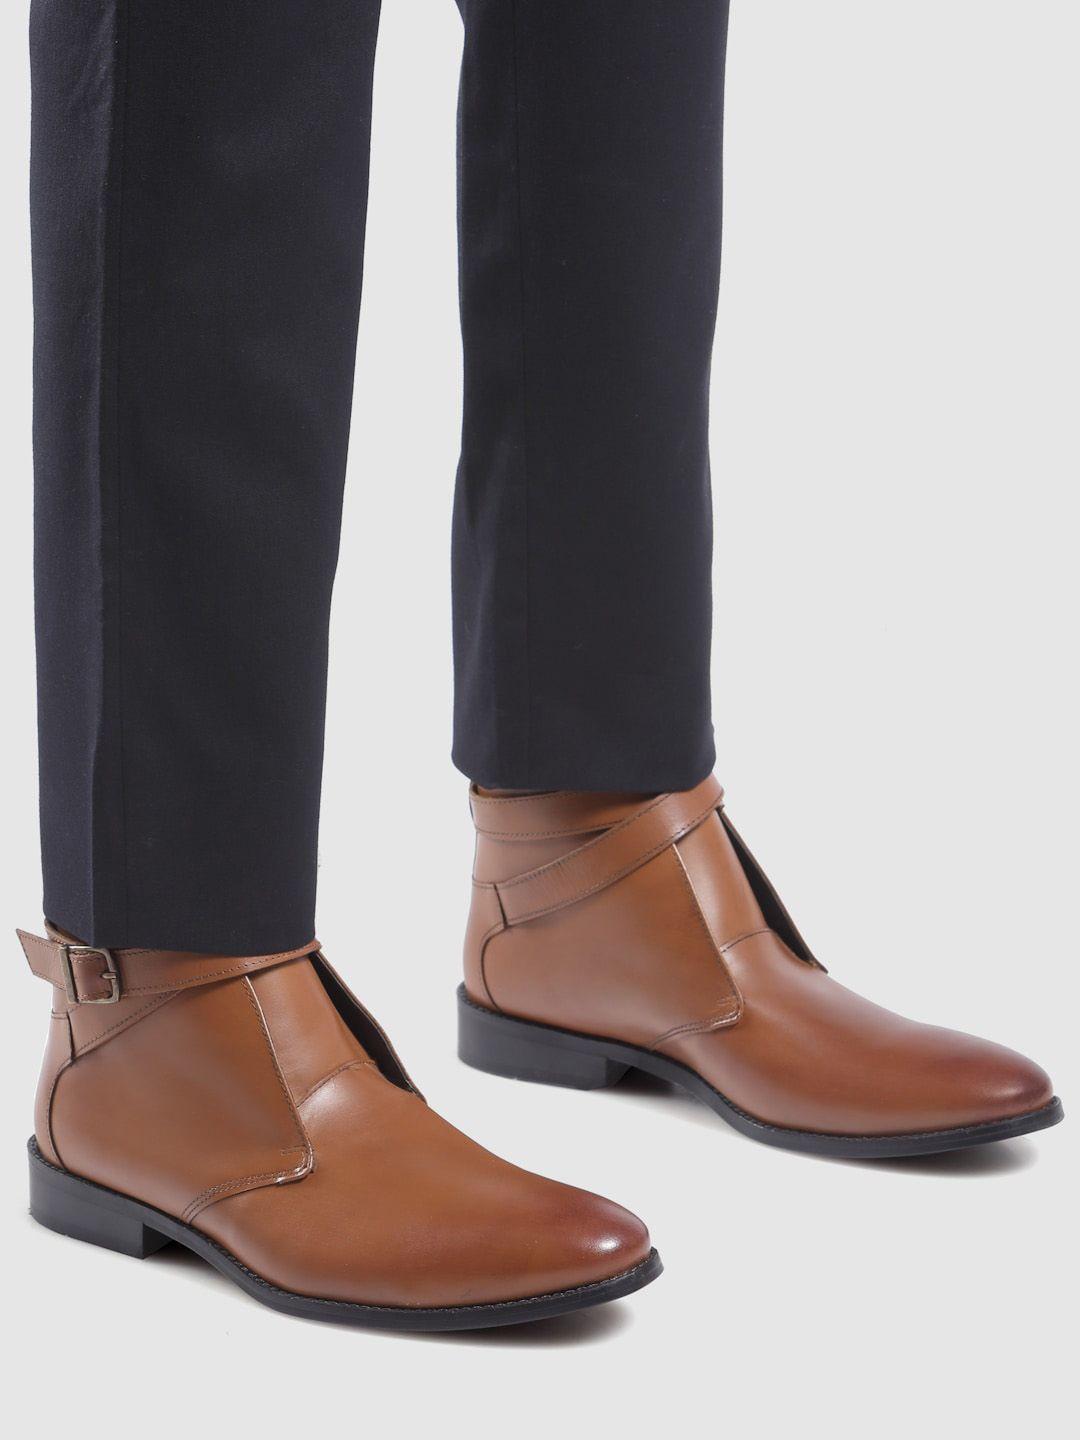 hats off accessories men mid top block-heel leather regular boots with buckle